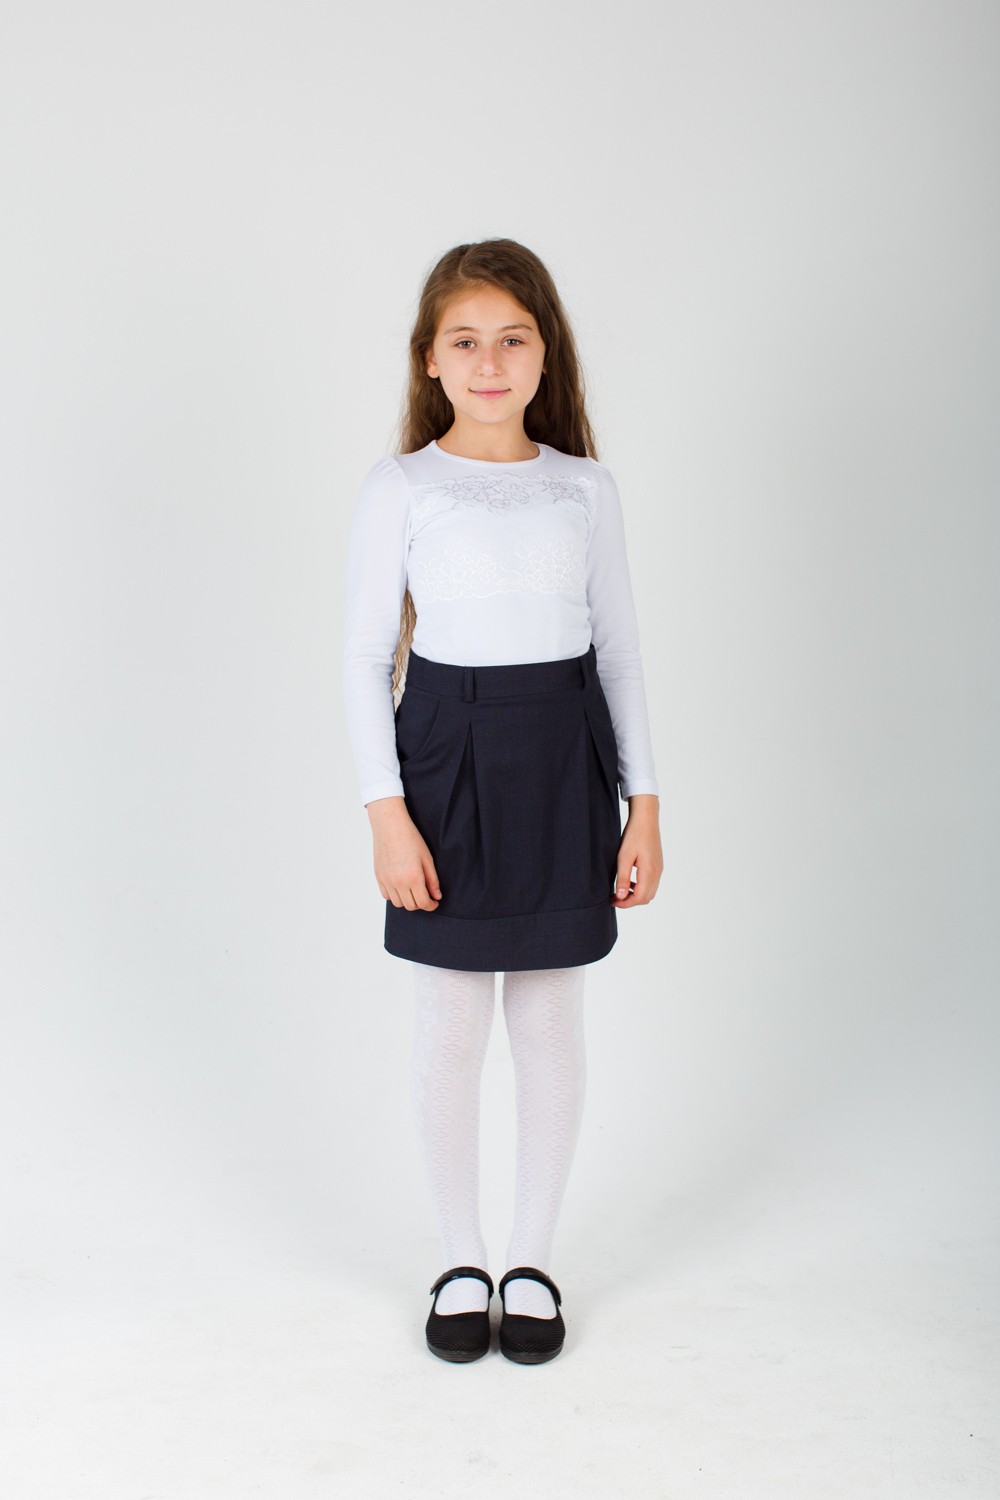 Блуза подростковая для девочки "Снежинка" с длинным рукавом